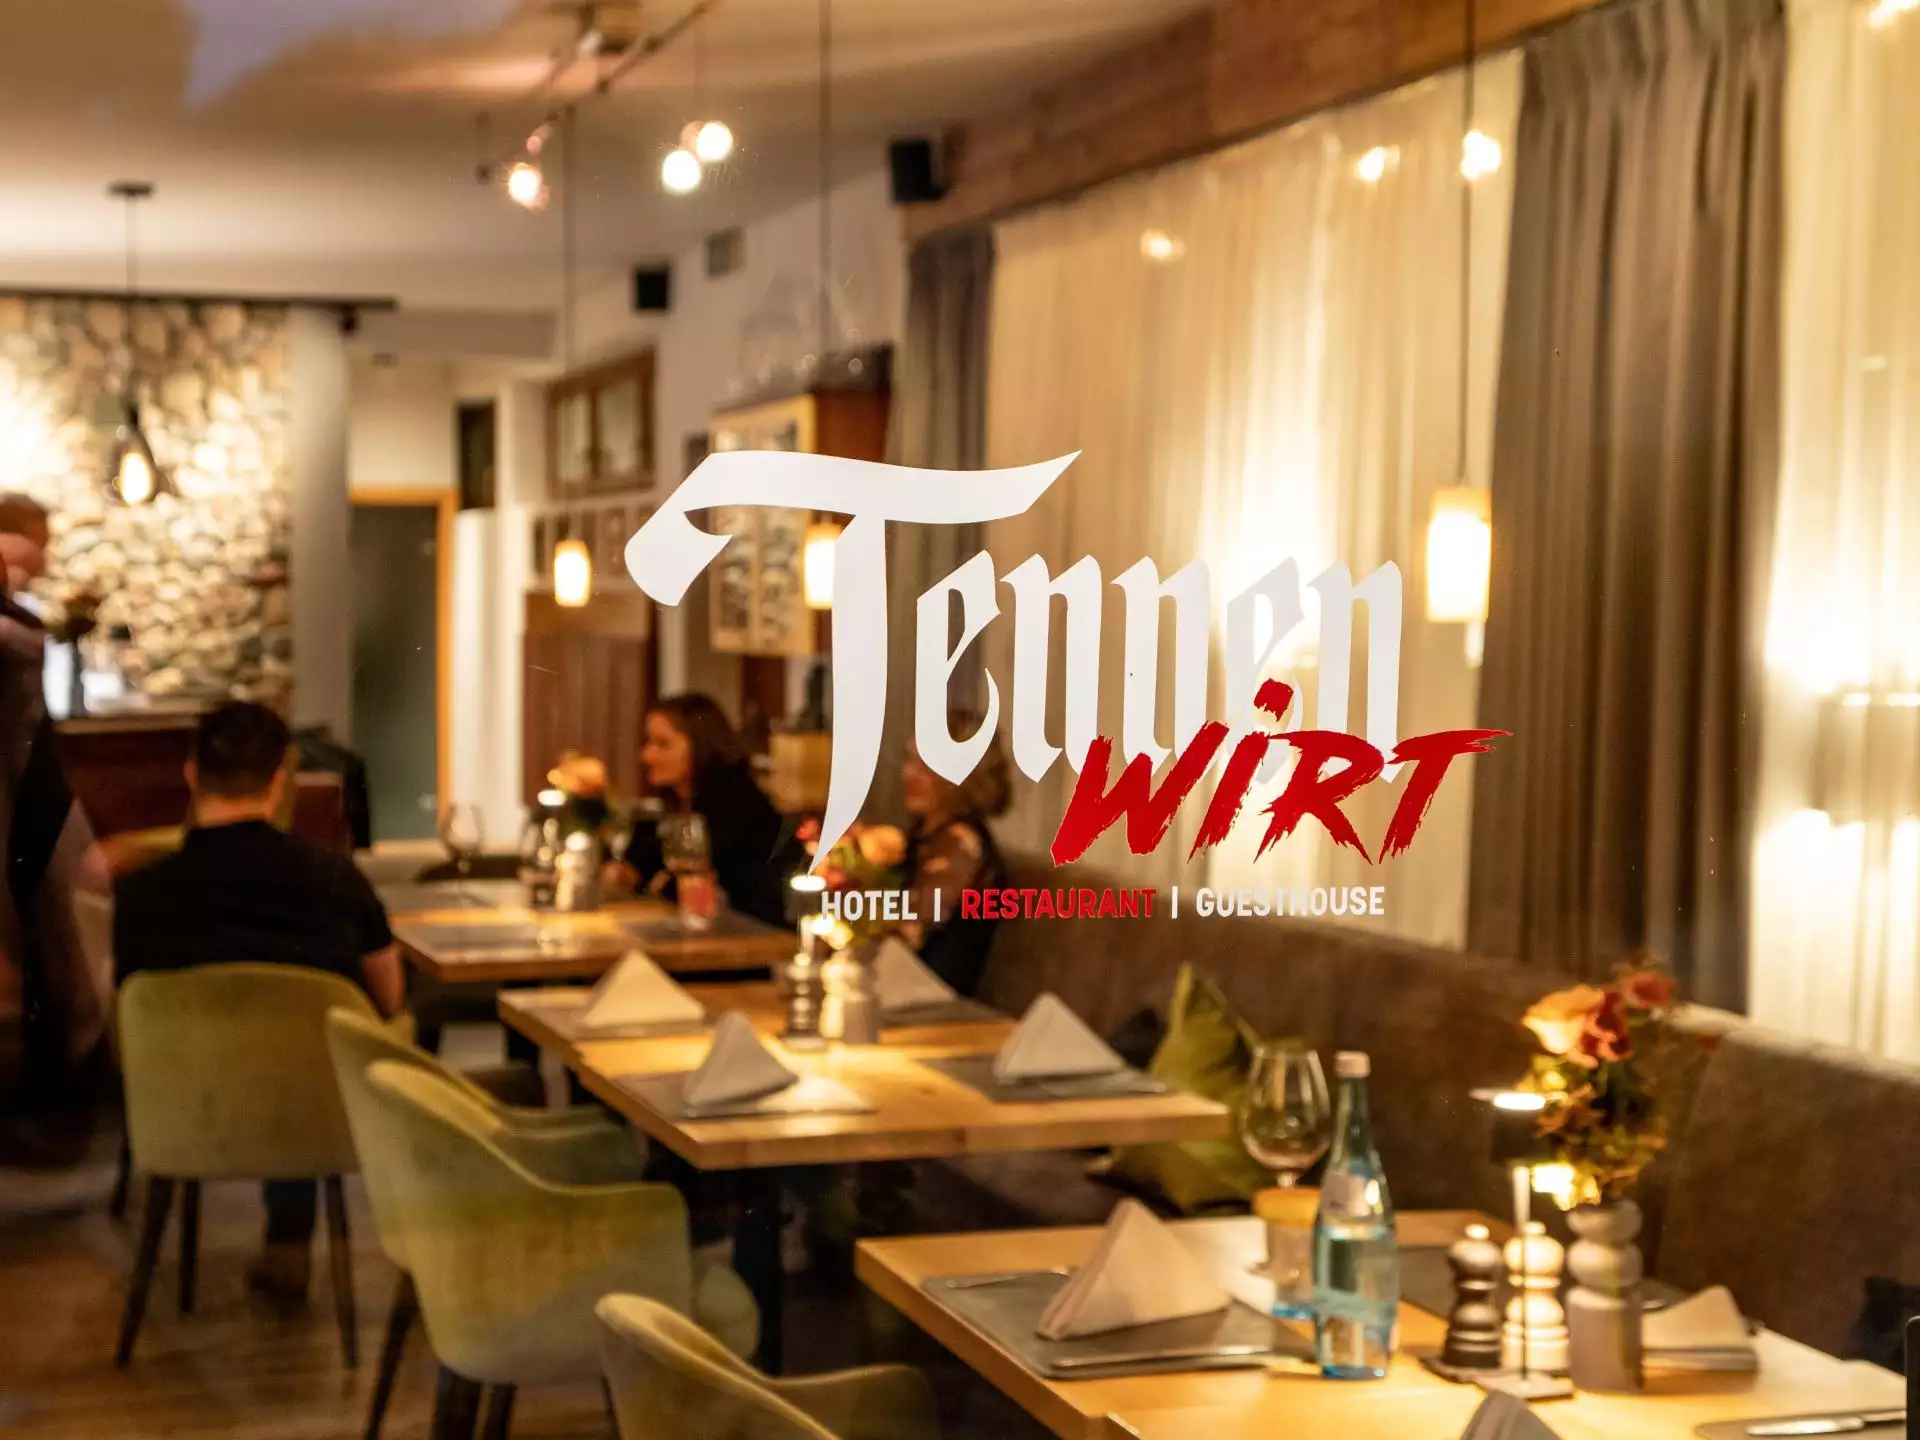 Tennenwirt Guesthouse #Willkommen#Bildergalerie#Restaurant